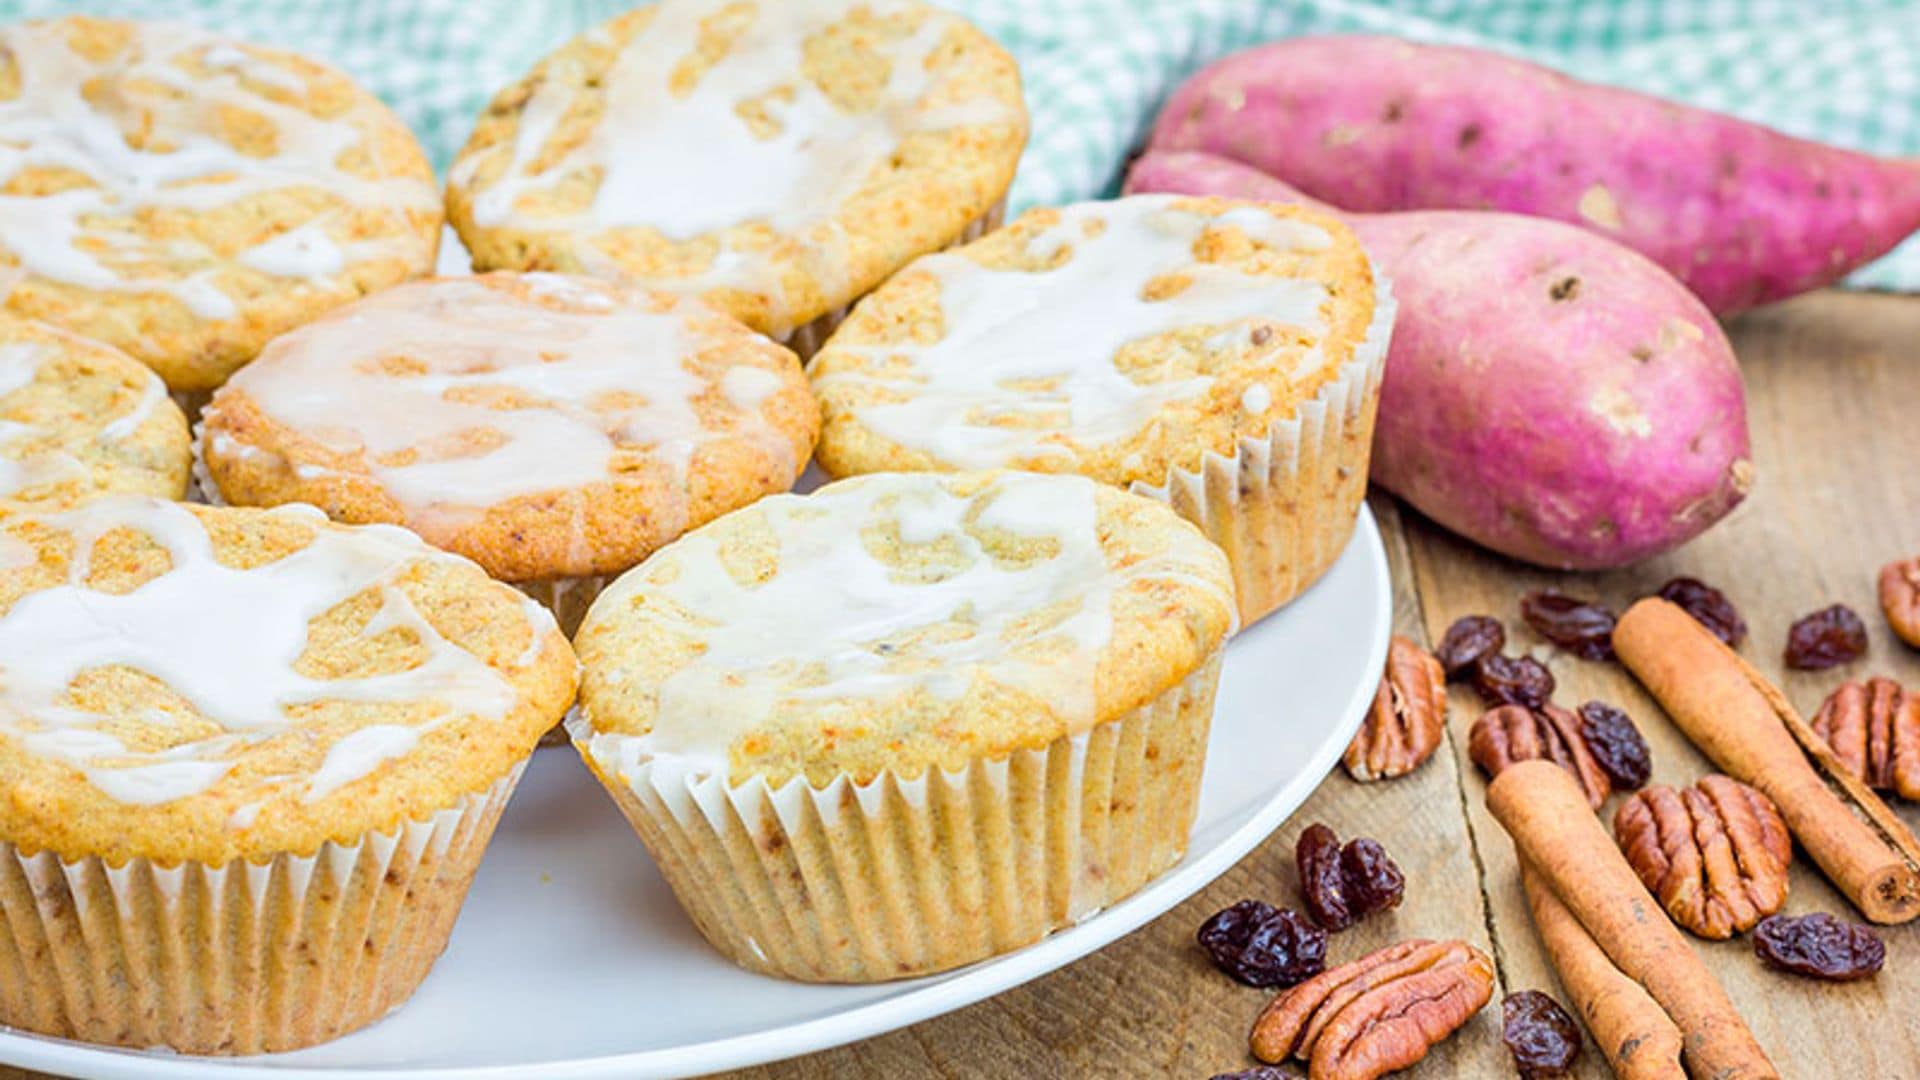 Muffins de boniato con nueces y glaseado de limón